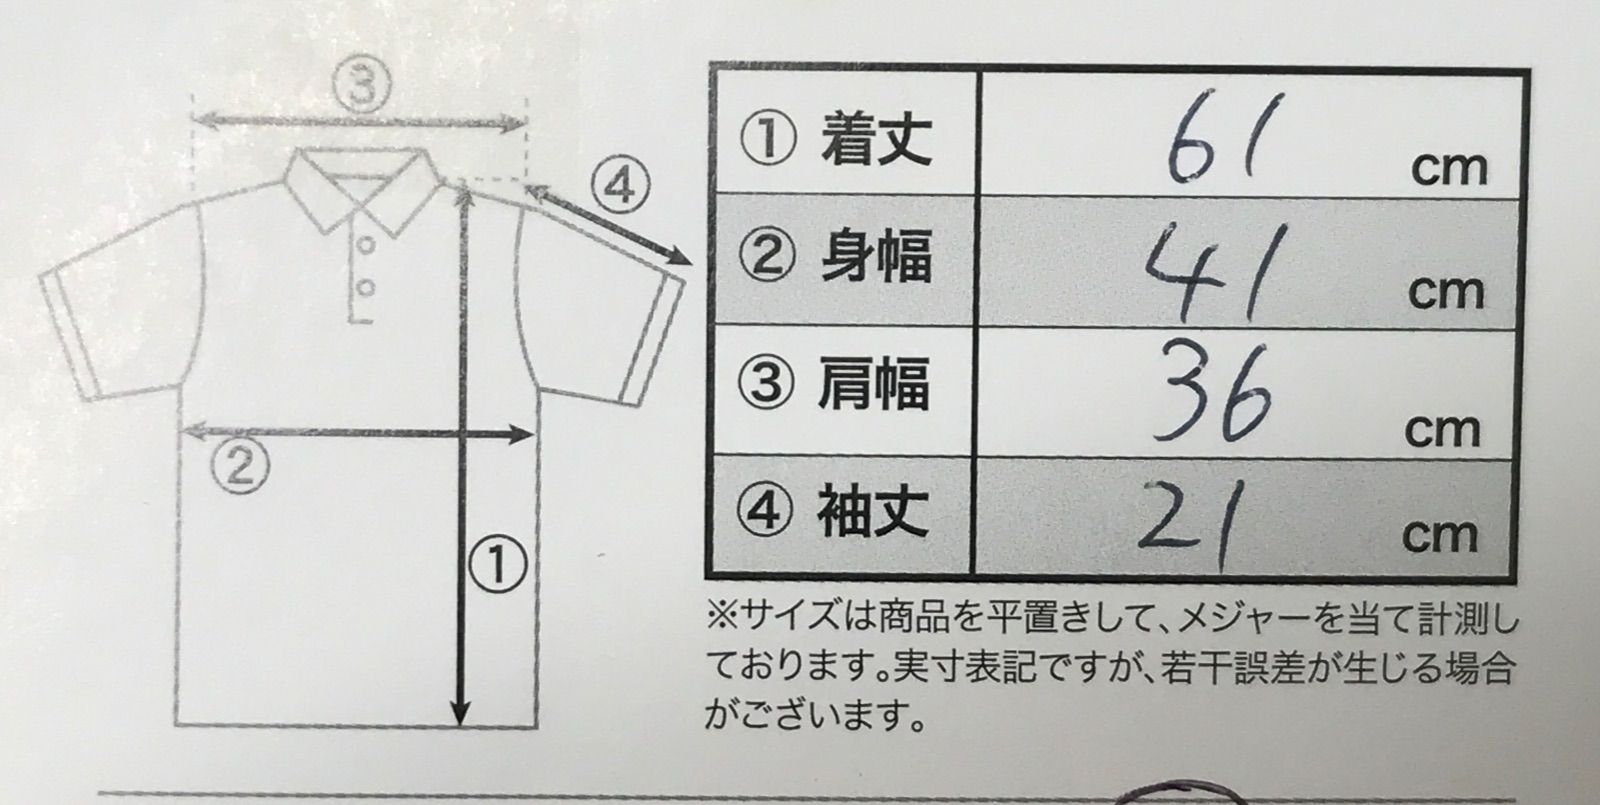 【USED】ZOY ゾーイ 綿 半袖 ポロシャツ ワッペン ベージュ系 レディース 38 M ゴルフウェア